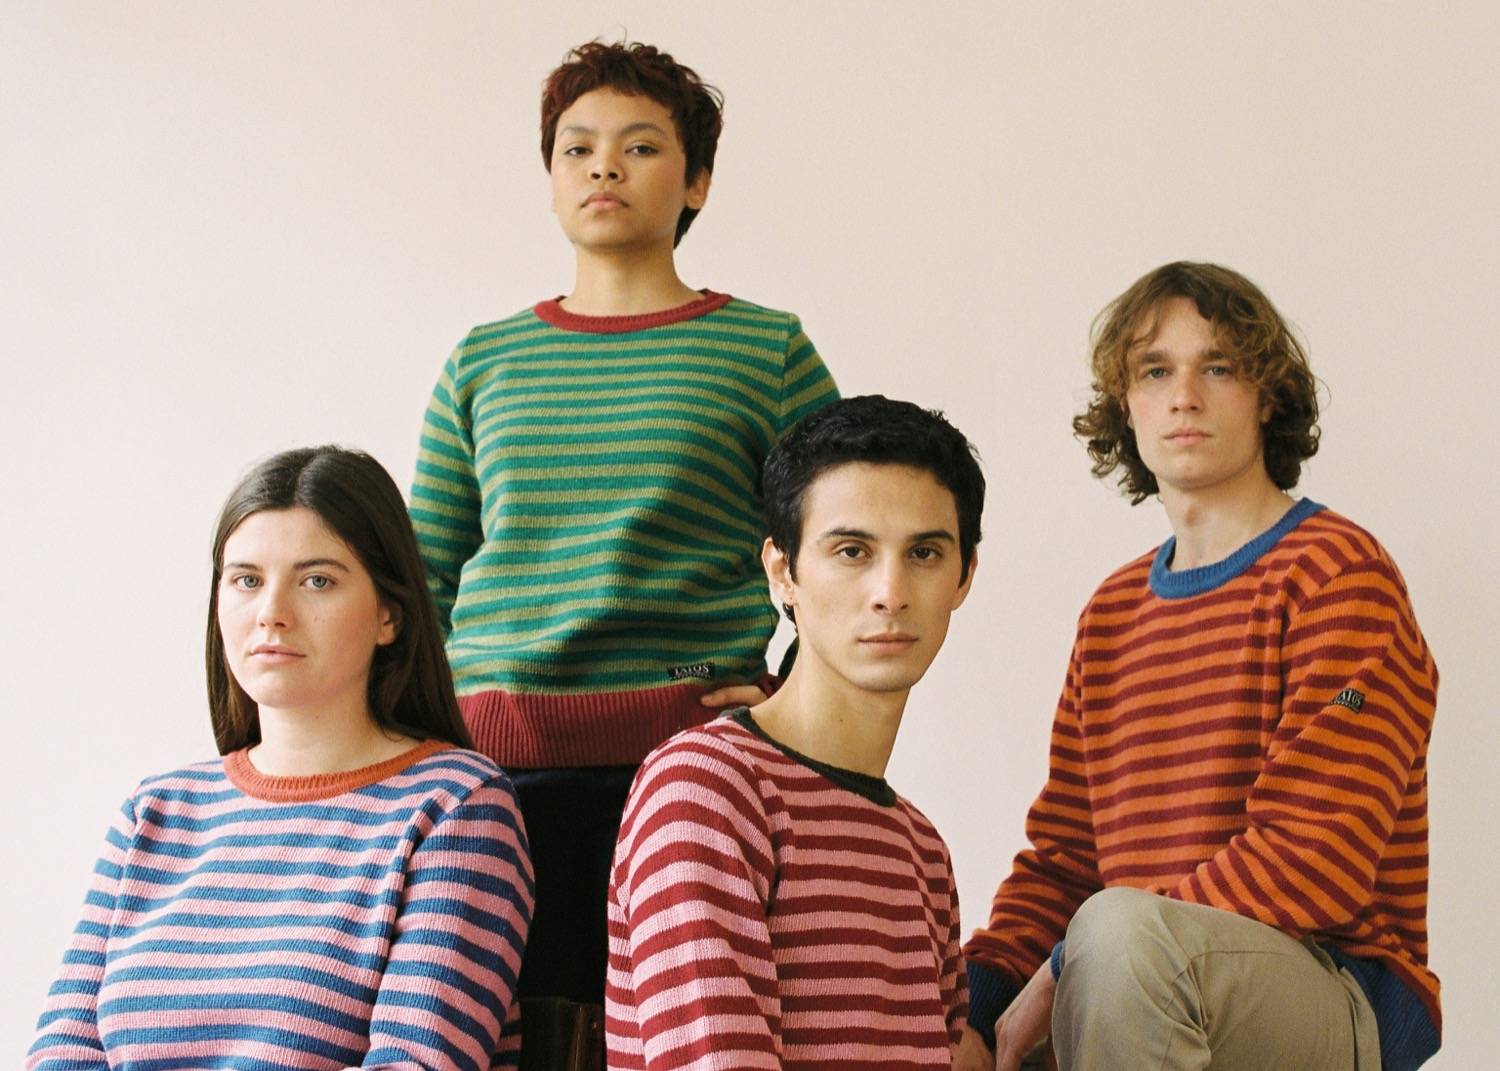 cuatro personas con el mismo jersey pero en distintos colores sentadas mirando a la cámara